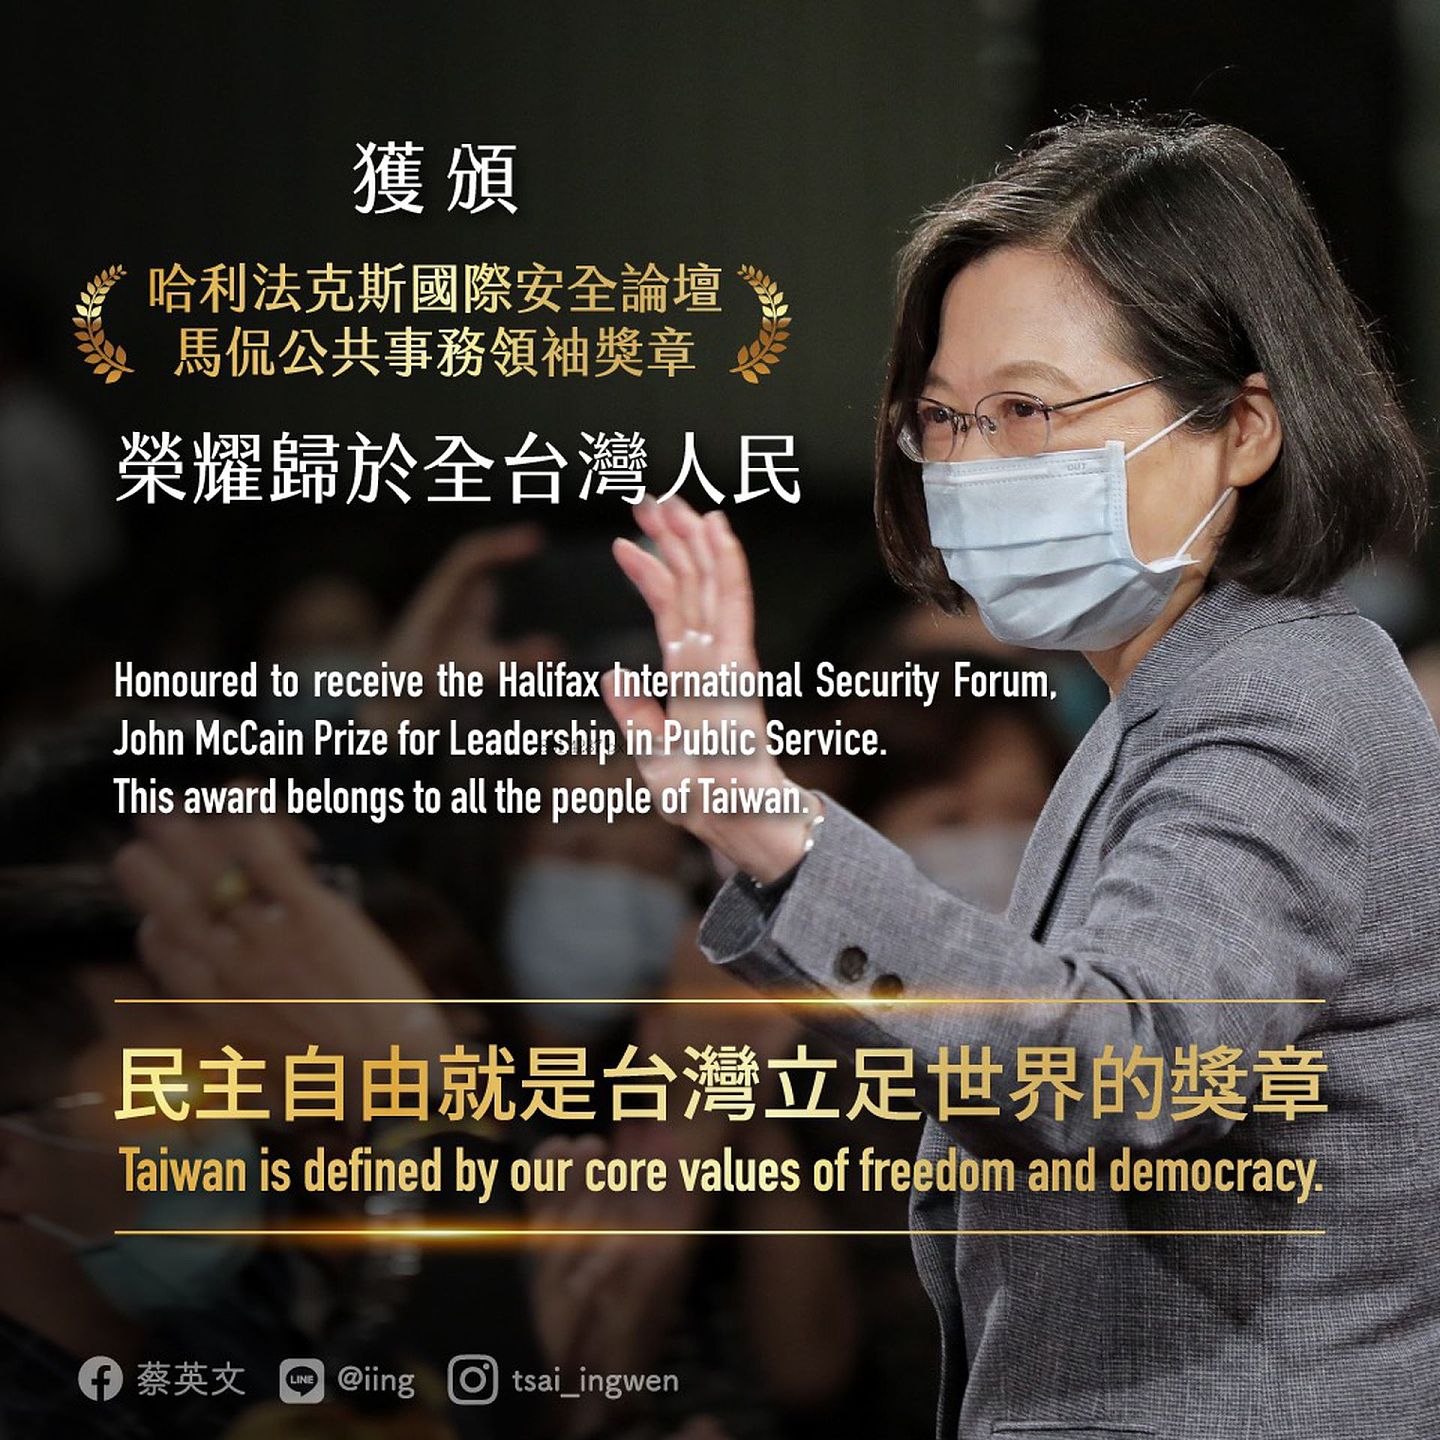 2021年5月3日，哈里法克斯国际安全论坛宣告蔡英文获颁“麦凯恩公共服务领导奖”。蔡英文于脸书表示，“民主自由，就是台湾立足世界的最好奖章”。（Facebook@蔡英文 Tsai Ing-wen）